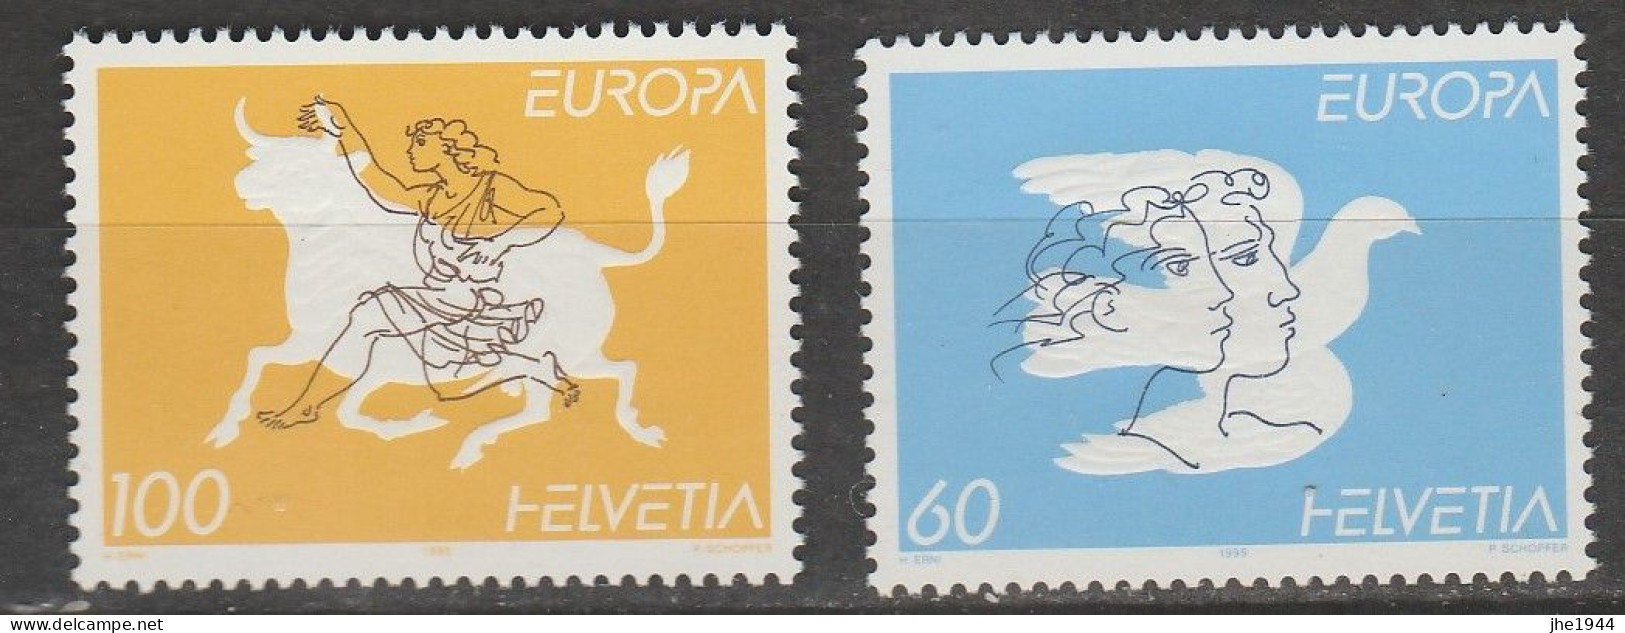 Europa 1995 Paix et Liberté Voir liste des timbres à vendre **